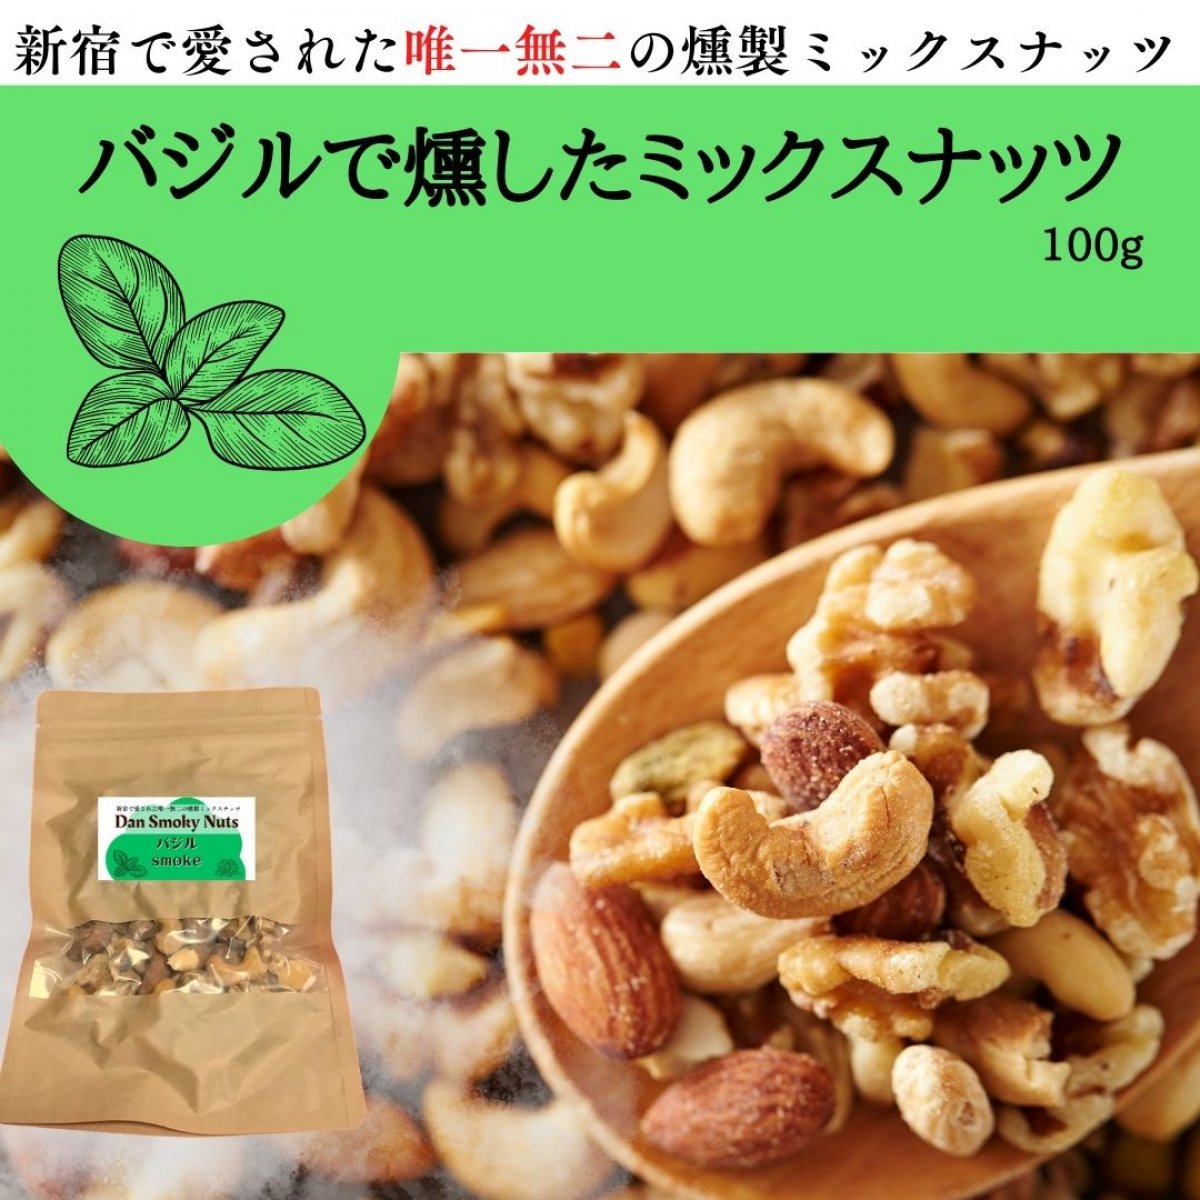 《バジル》100g【送料無料】新宿で愛された燻製ミックスナッツ〜Dan・Smoky・Nuts〜